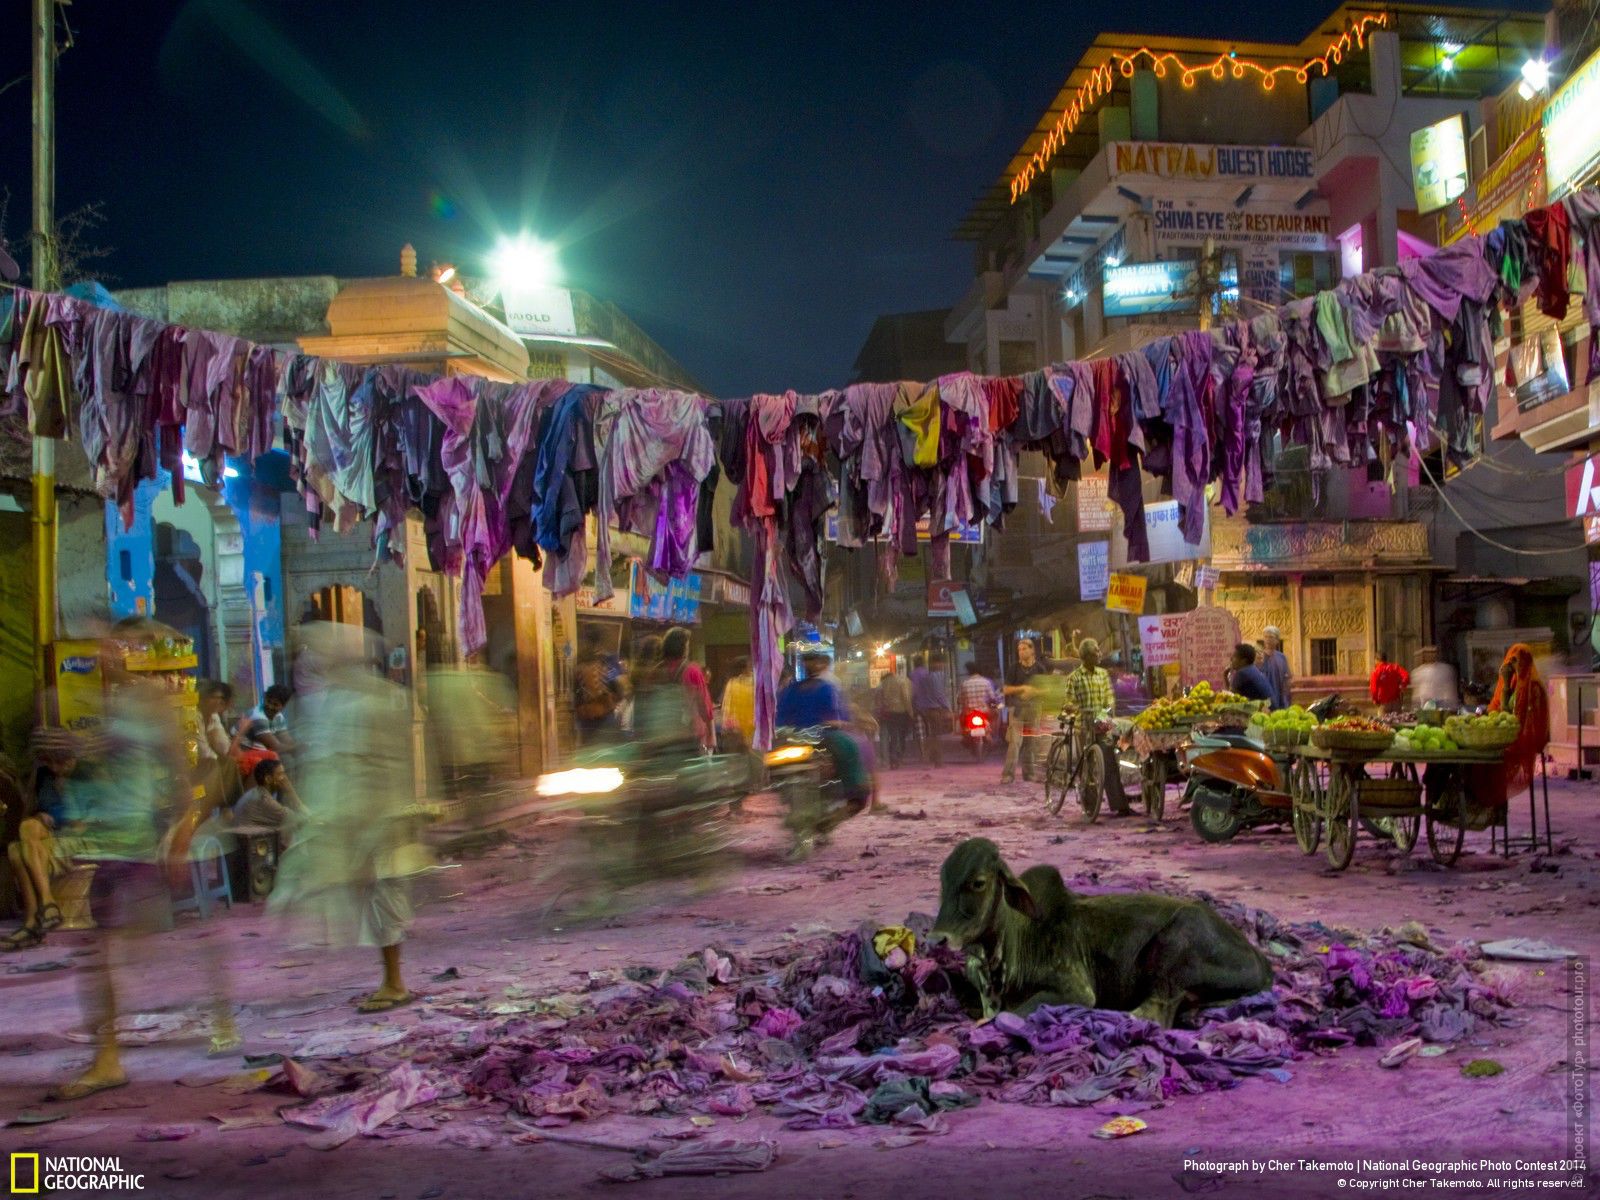 Вечер после праздника Холи. Фототур Невероятная Индия: Холи+ Агра+Орчха+Кхаджурахо+Варанаси, 20.03. 2021 - 01.04.2021г.